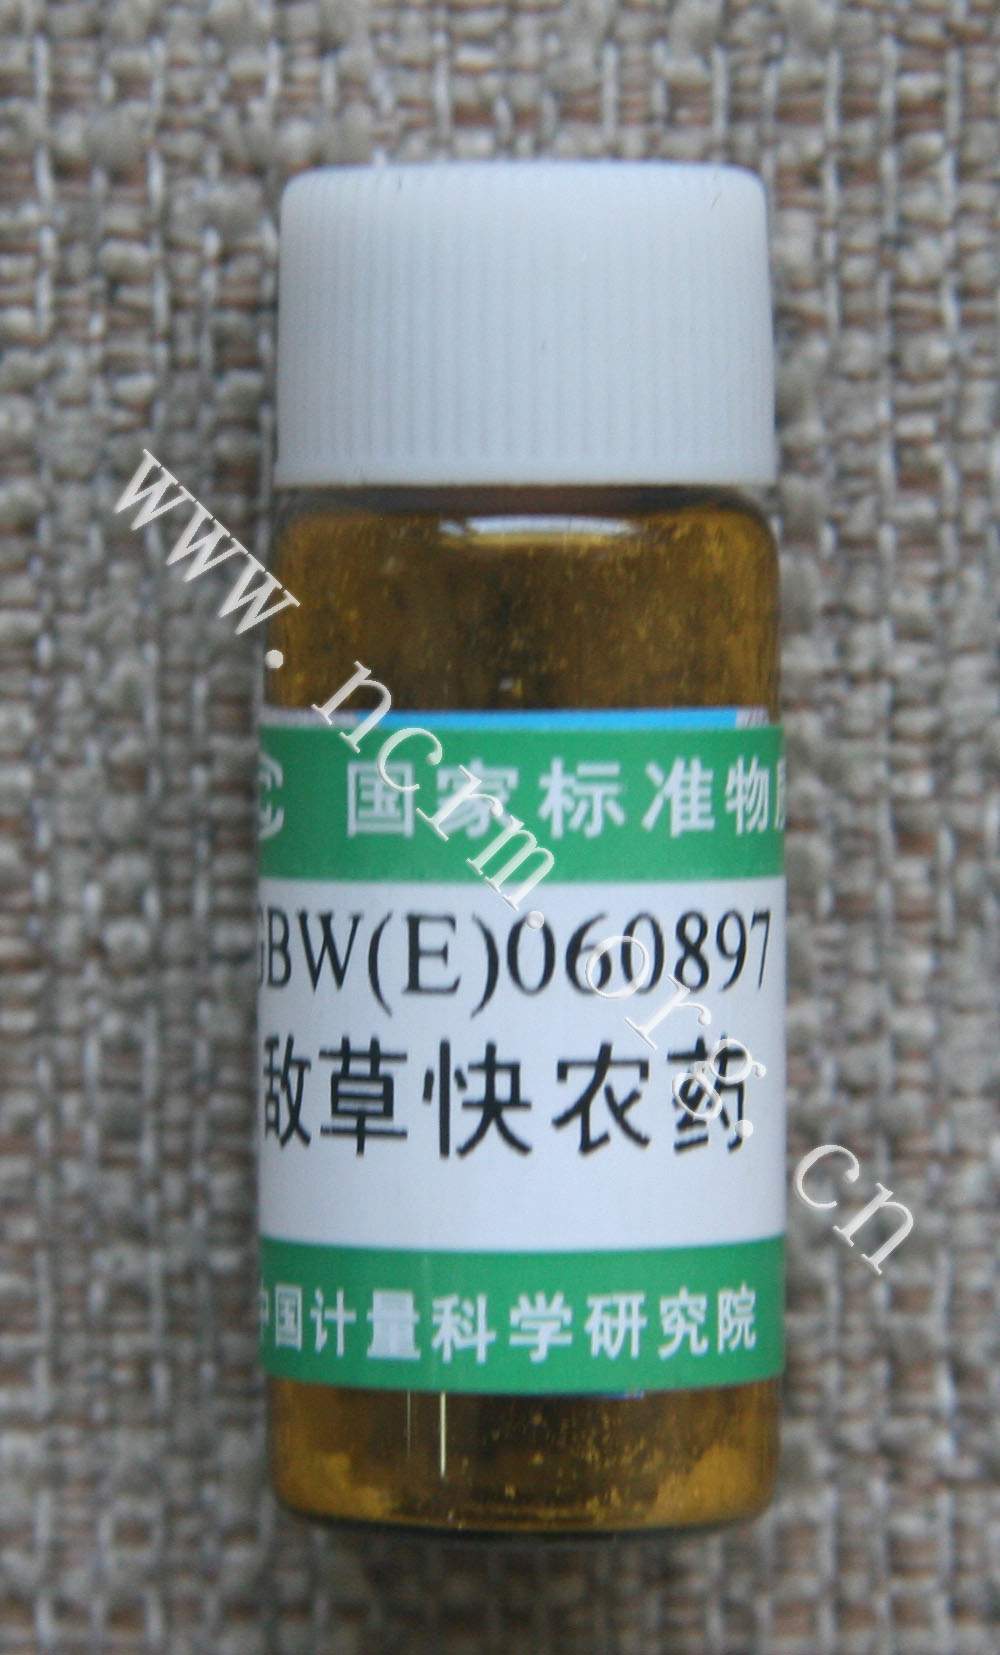 GBW(E)060897 敌草快农药纯度标准物质国家标准物质资源共享平台